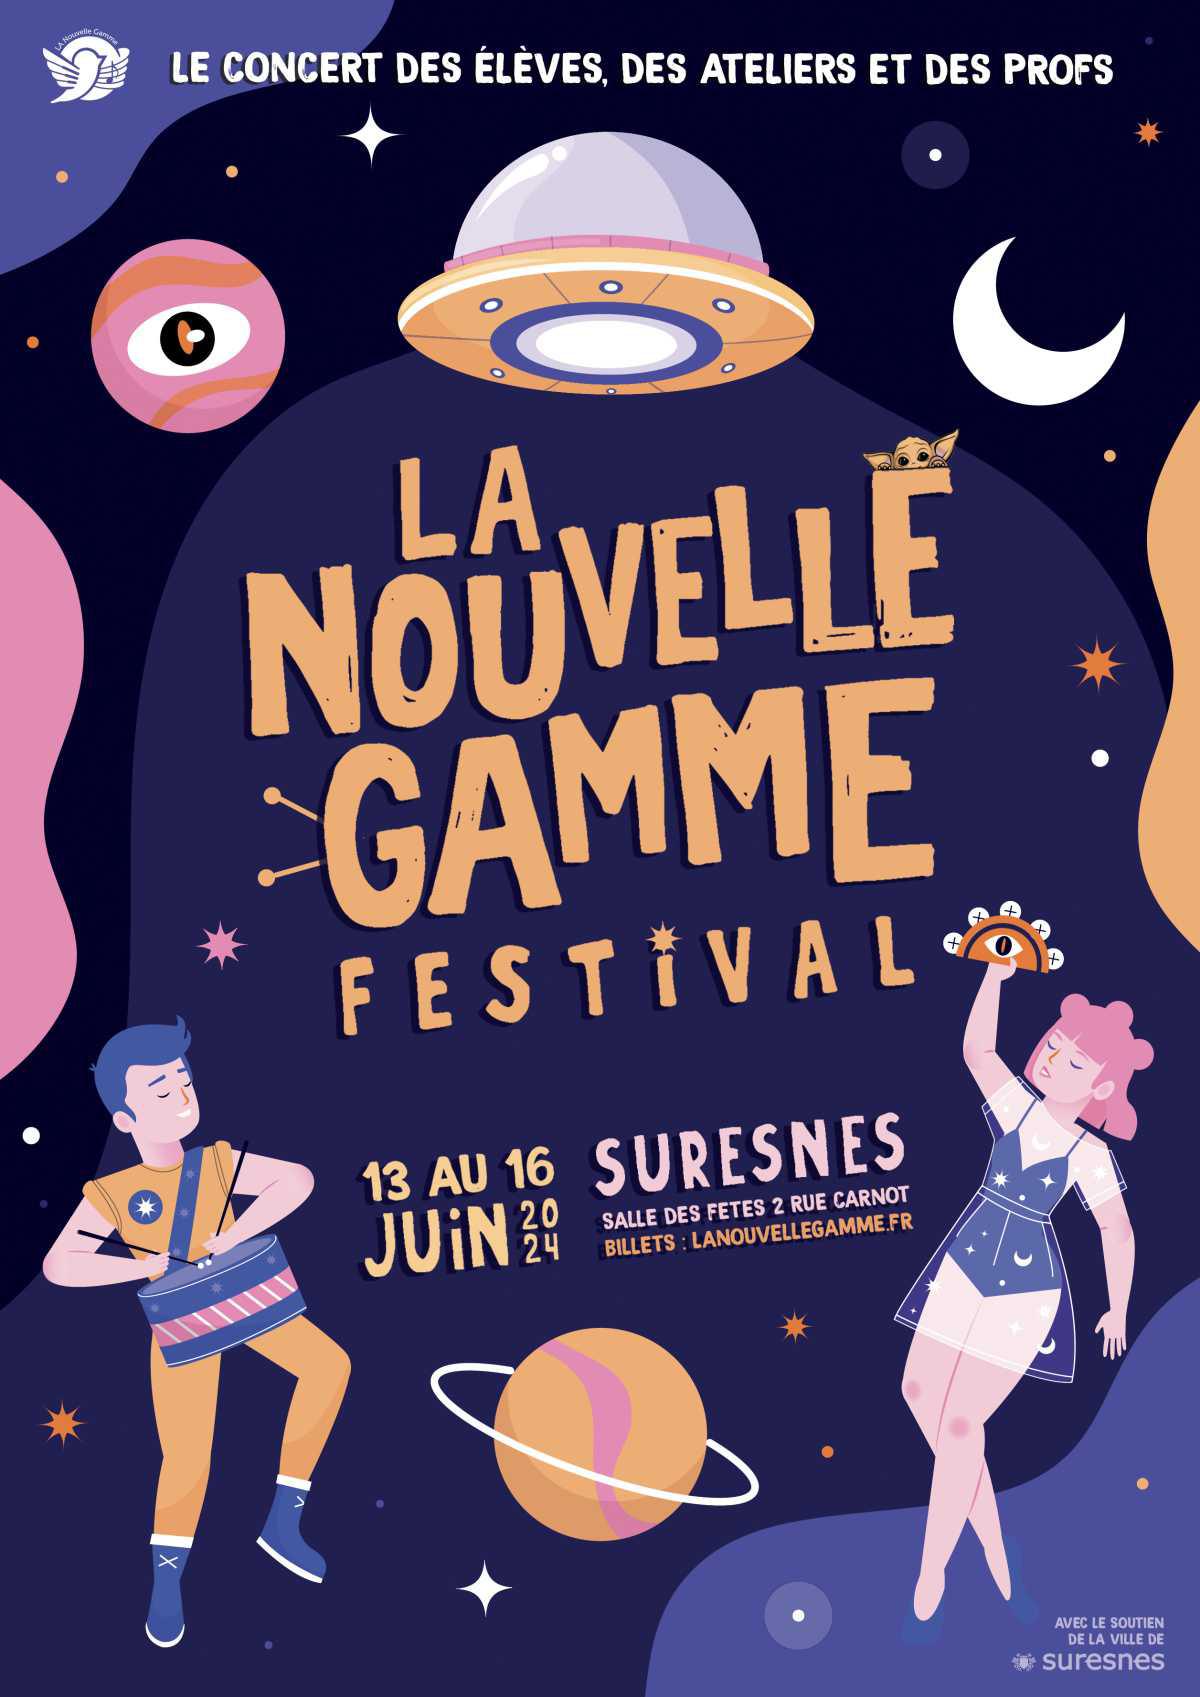 LA Nouvelle Gamme Festival : Concerts des élèves, des ateliers et des profs 